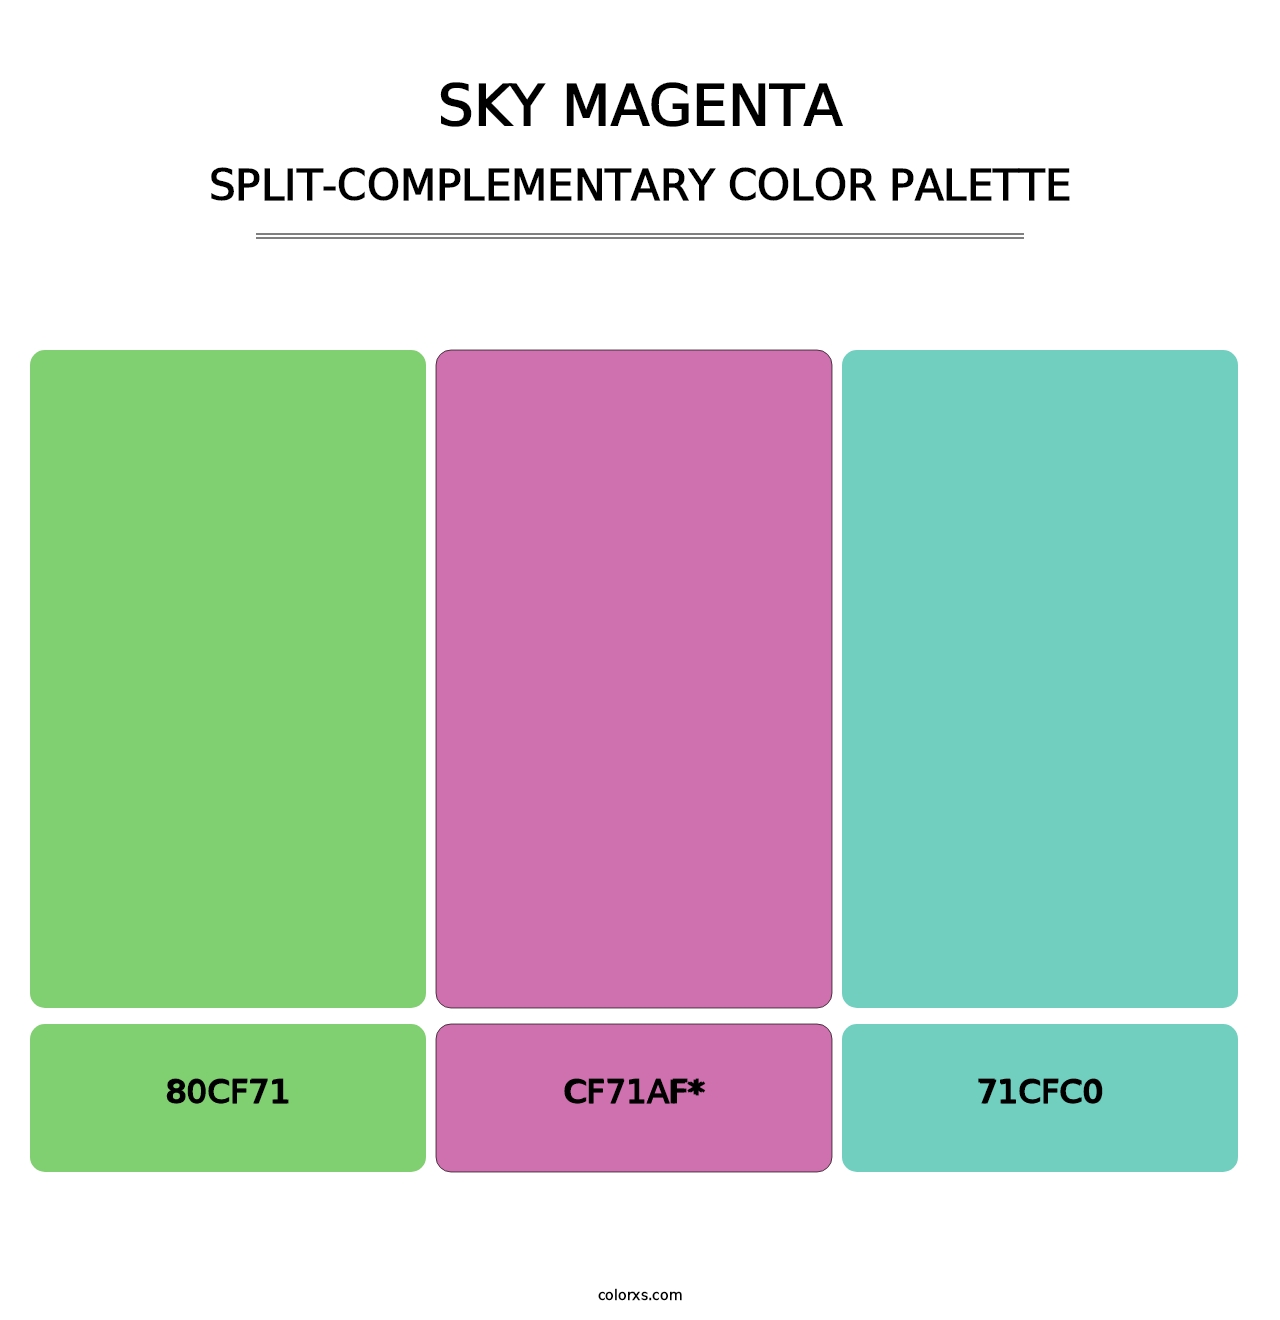 Sky Magenta - Split-Complementary Color Palette